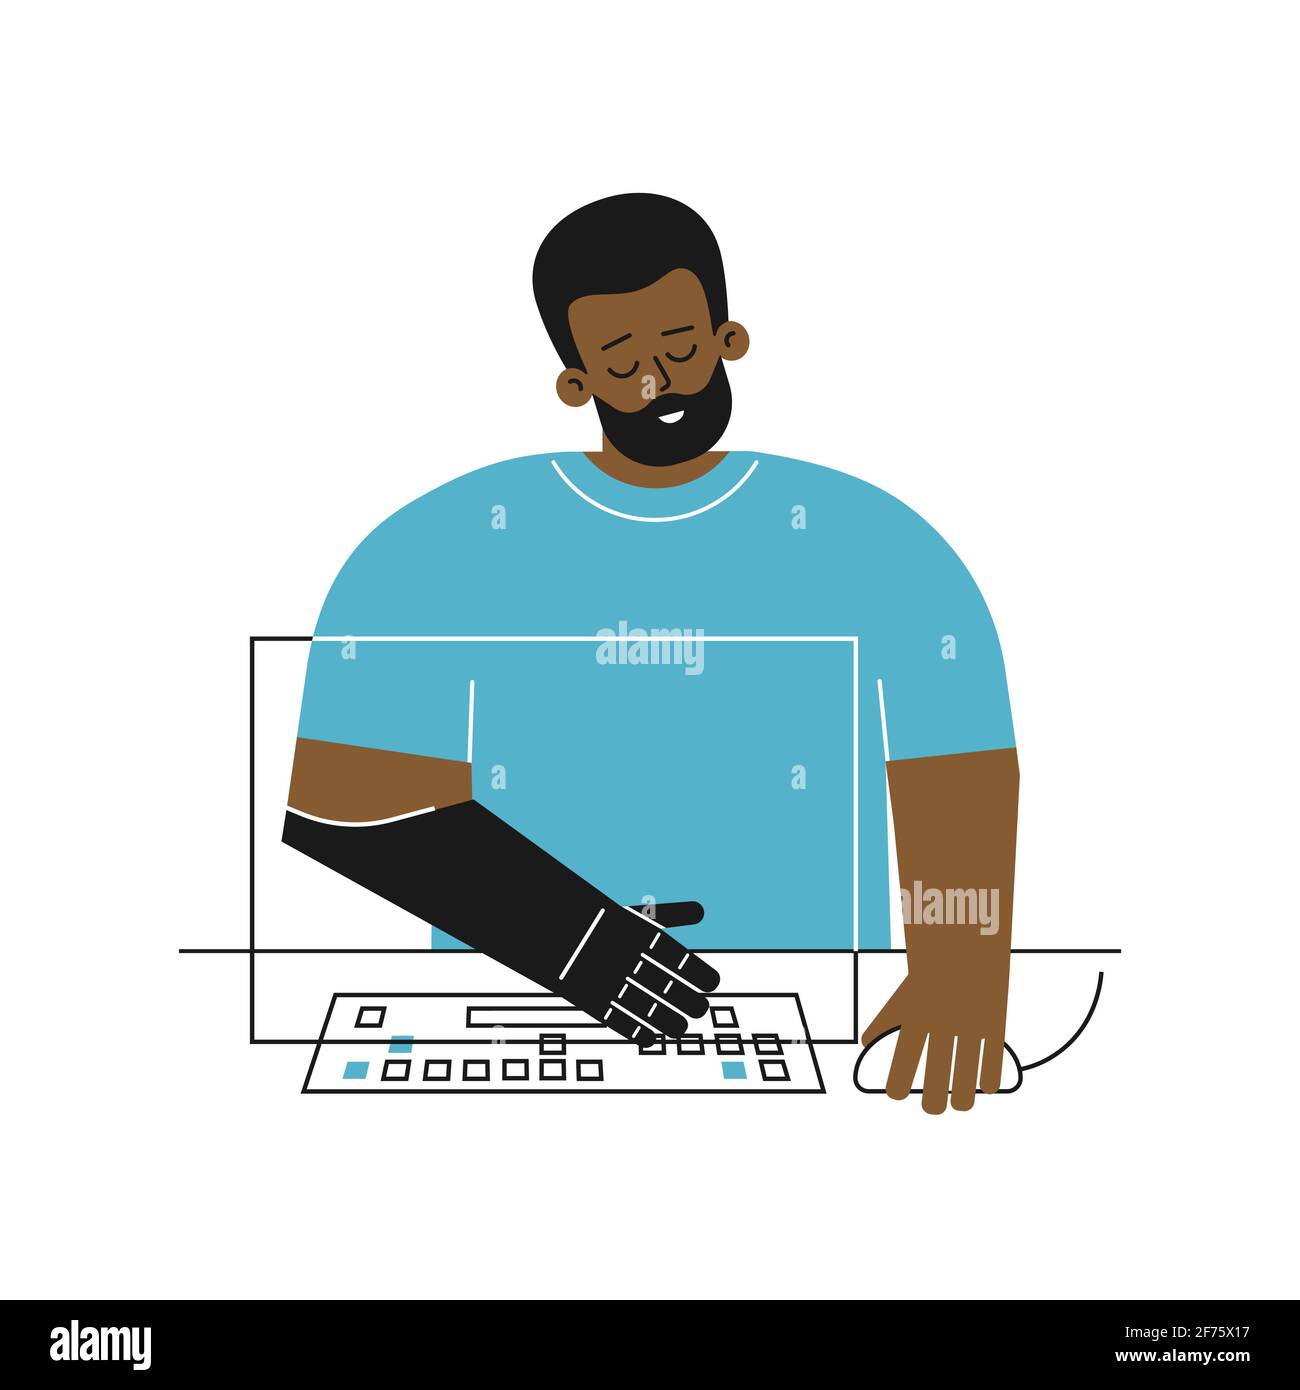 Vector flaches Konzept mit behinderter Person. Cartoon african american Kerl hat künstliche Gliedmaßen Arm. Man-Typen auf Computer-Tastatur mit prothetischen Arm Stock Vektor